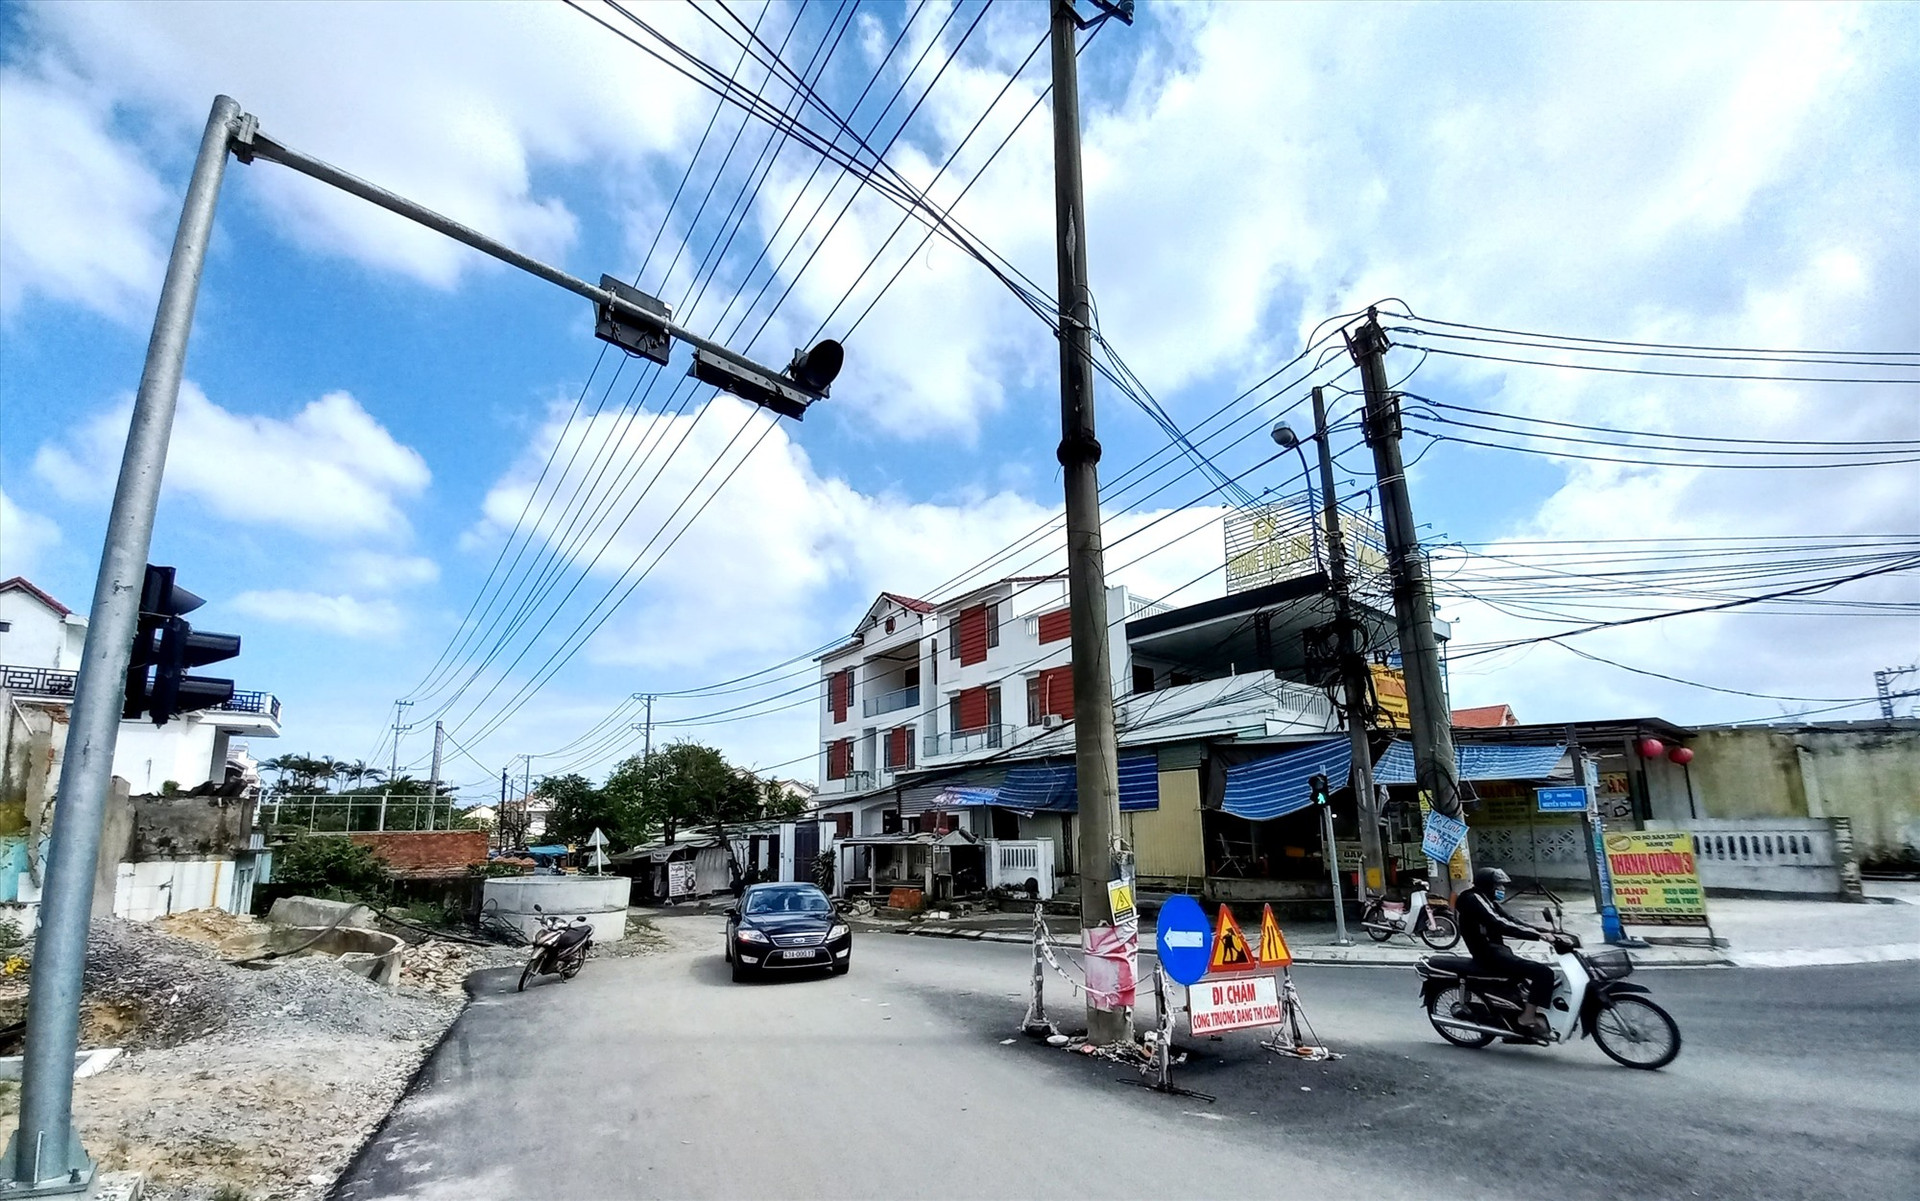 Một trụ điện án ngữ nơi giao nhau giữa đường Nguyễn Tất Thành - Nguyễn Chí Thanh (TP.Hội An) chưa được di dời. Ảnh: K.K